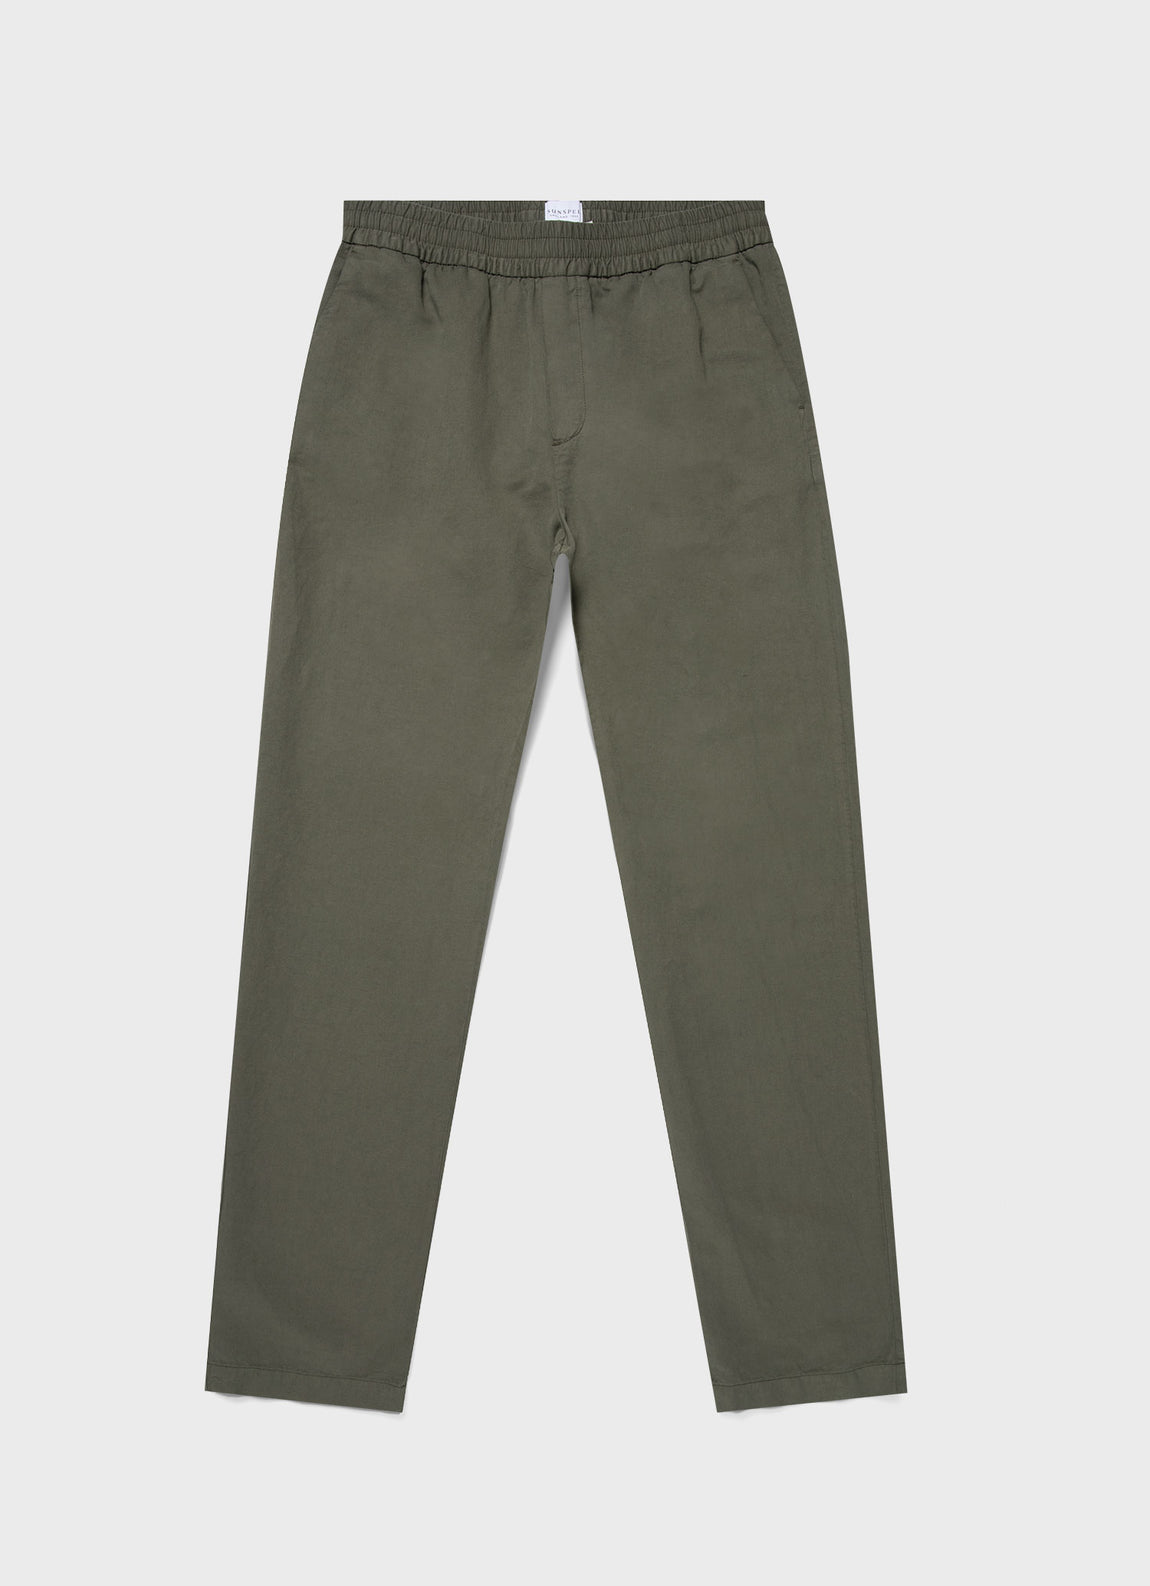 Men's Cotton Linen Drawstring Trouser in Khaki | Sunspel